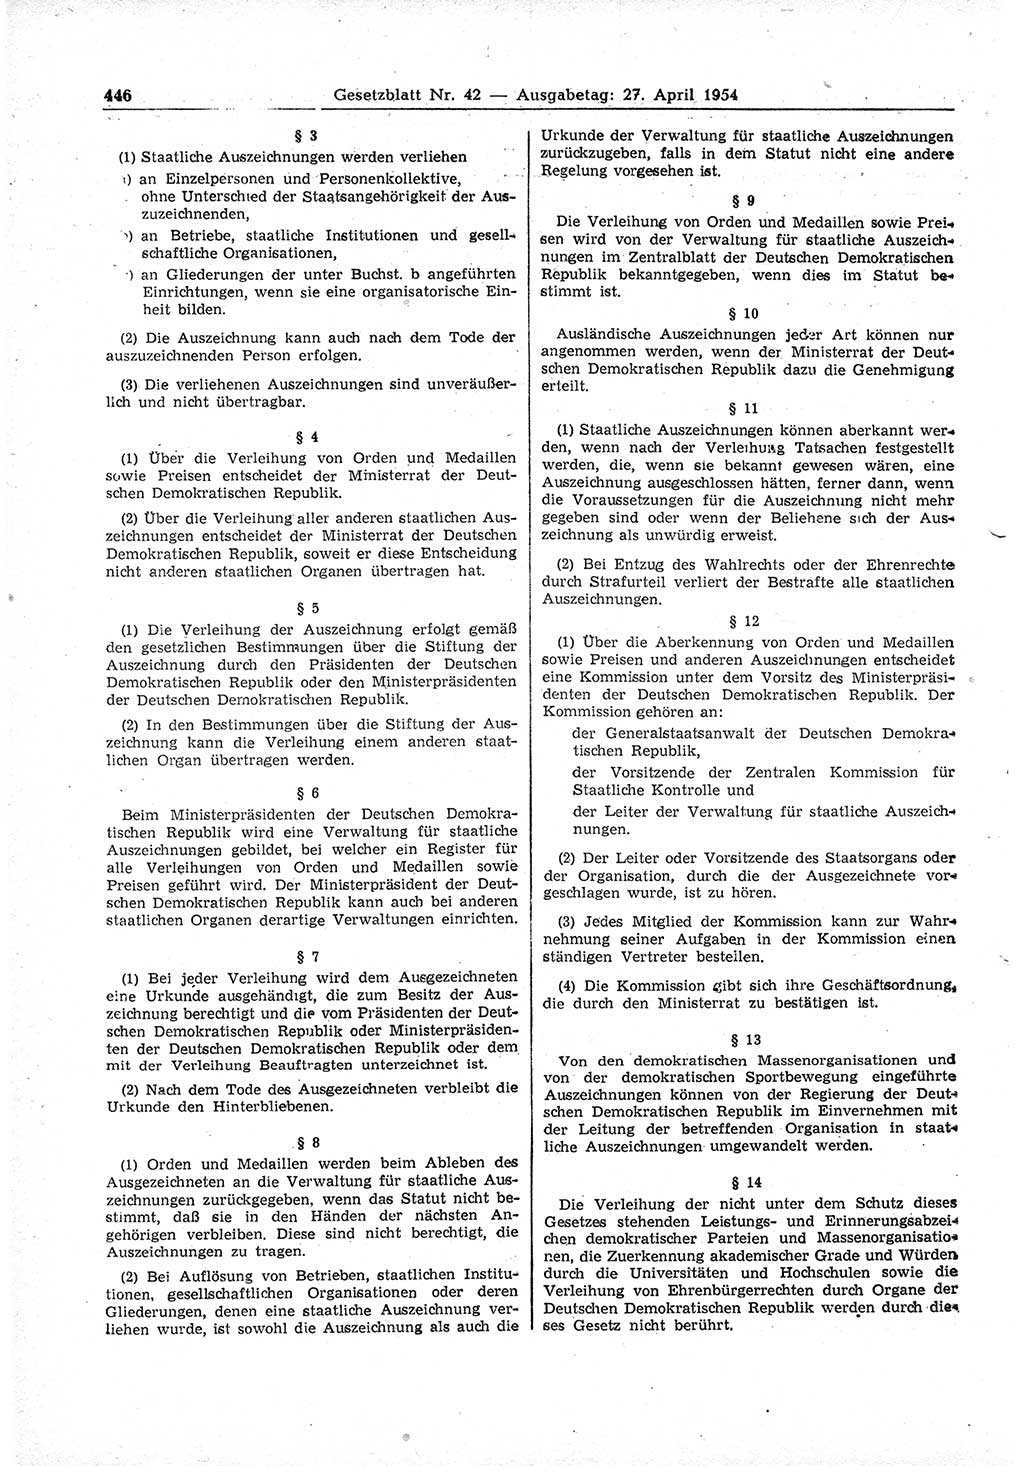 Gesetzblatt (GBl.) der Deutschen Demokratischen Republik (DDR) 1954, Seite 446 (GBl. DDR 1954, S. 446)